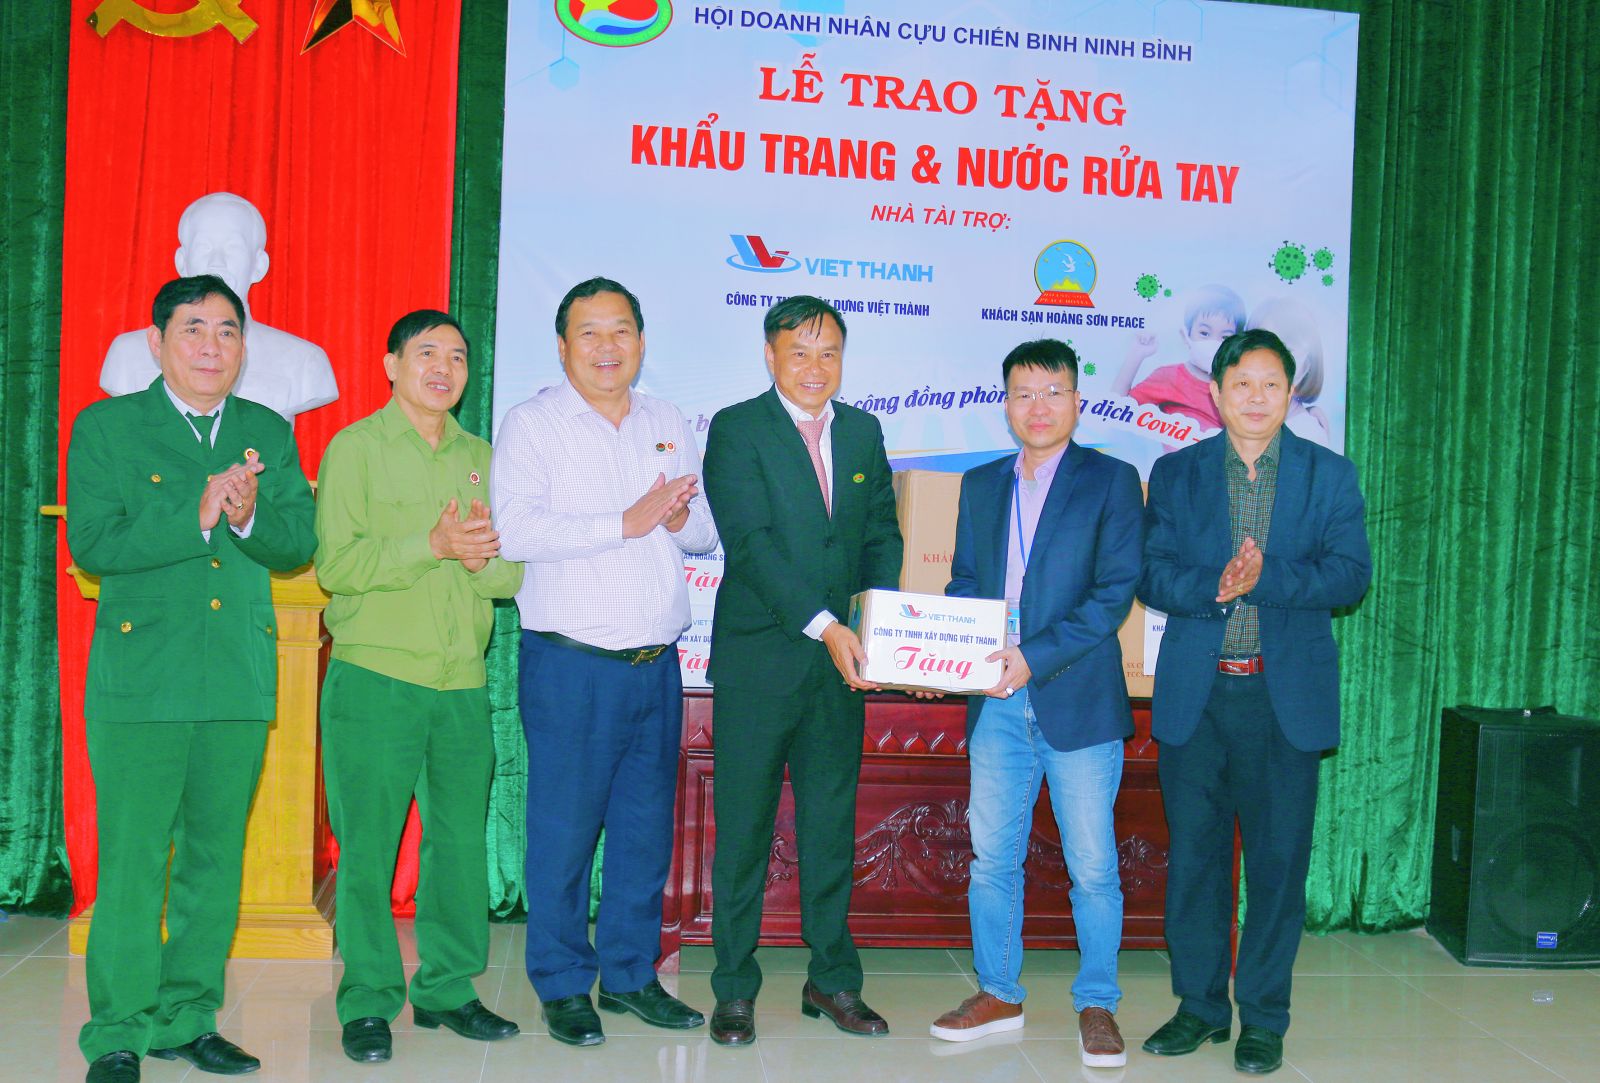 Hội nghị Doanh nhân CCB tỉnh trao Khẩu trang, nước rửa tay phòng chống dịch Covid-19 cho trung tâm y tế tỉnh Ninh Bình.